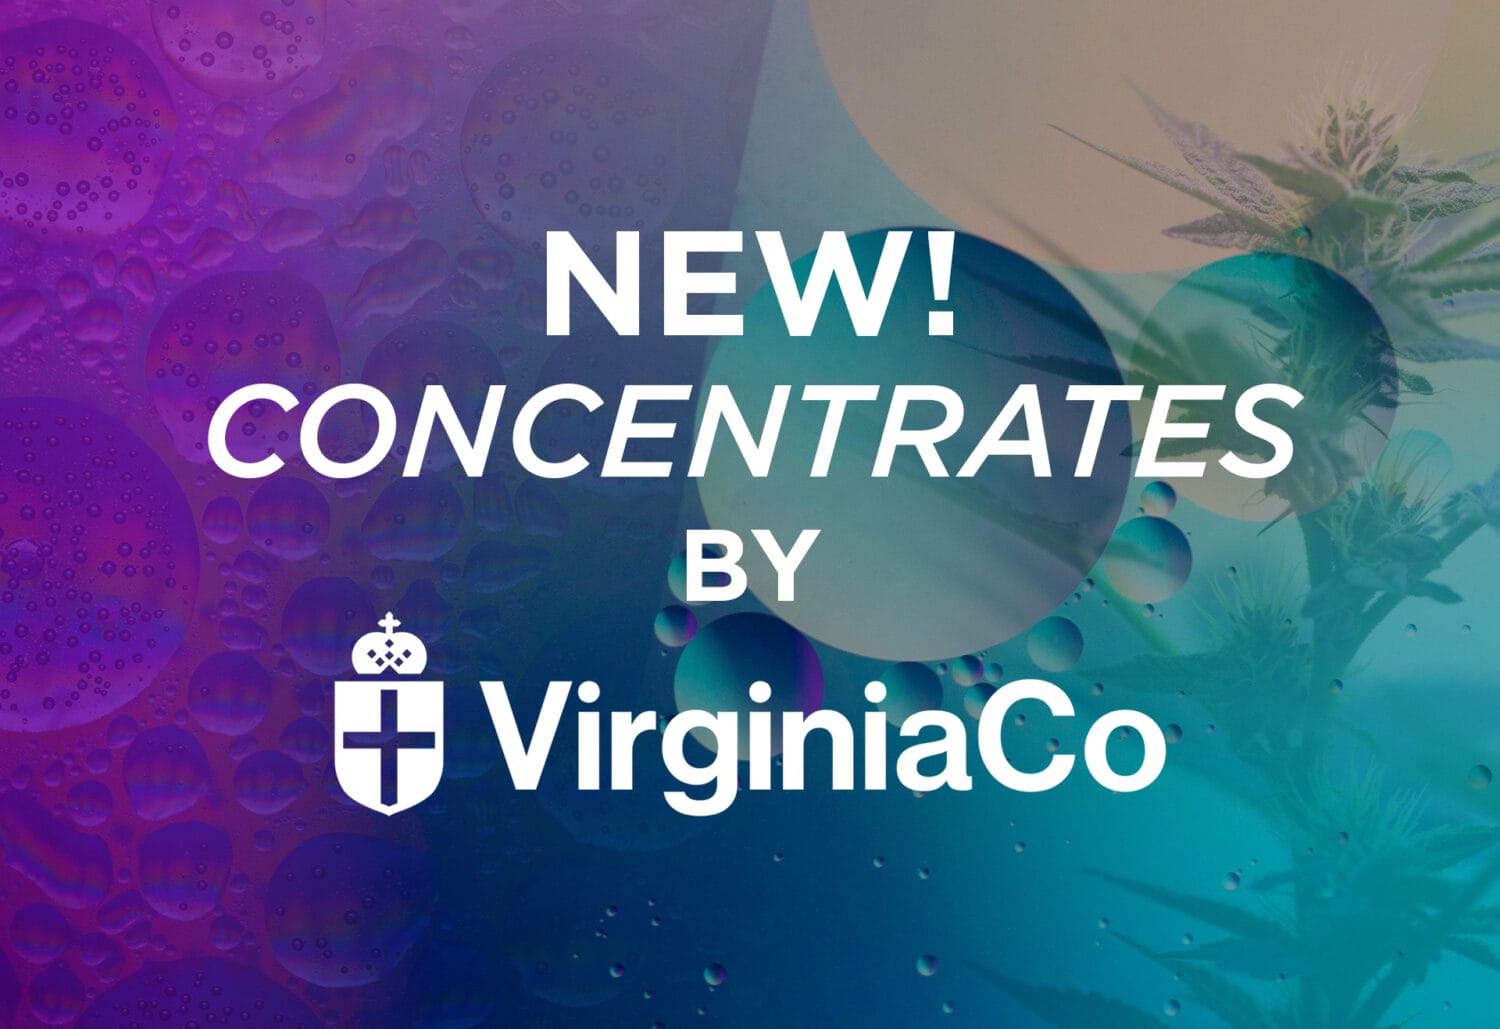 Virginia Co Concentrates